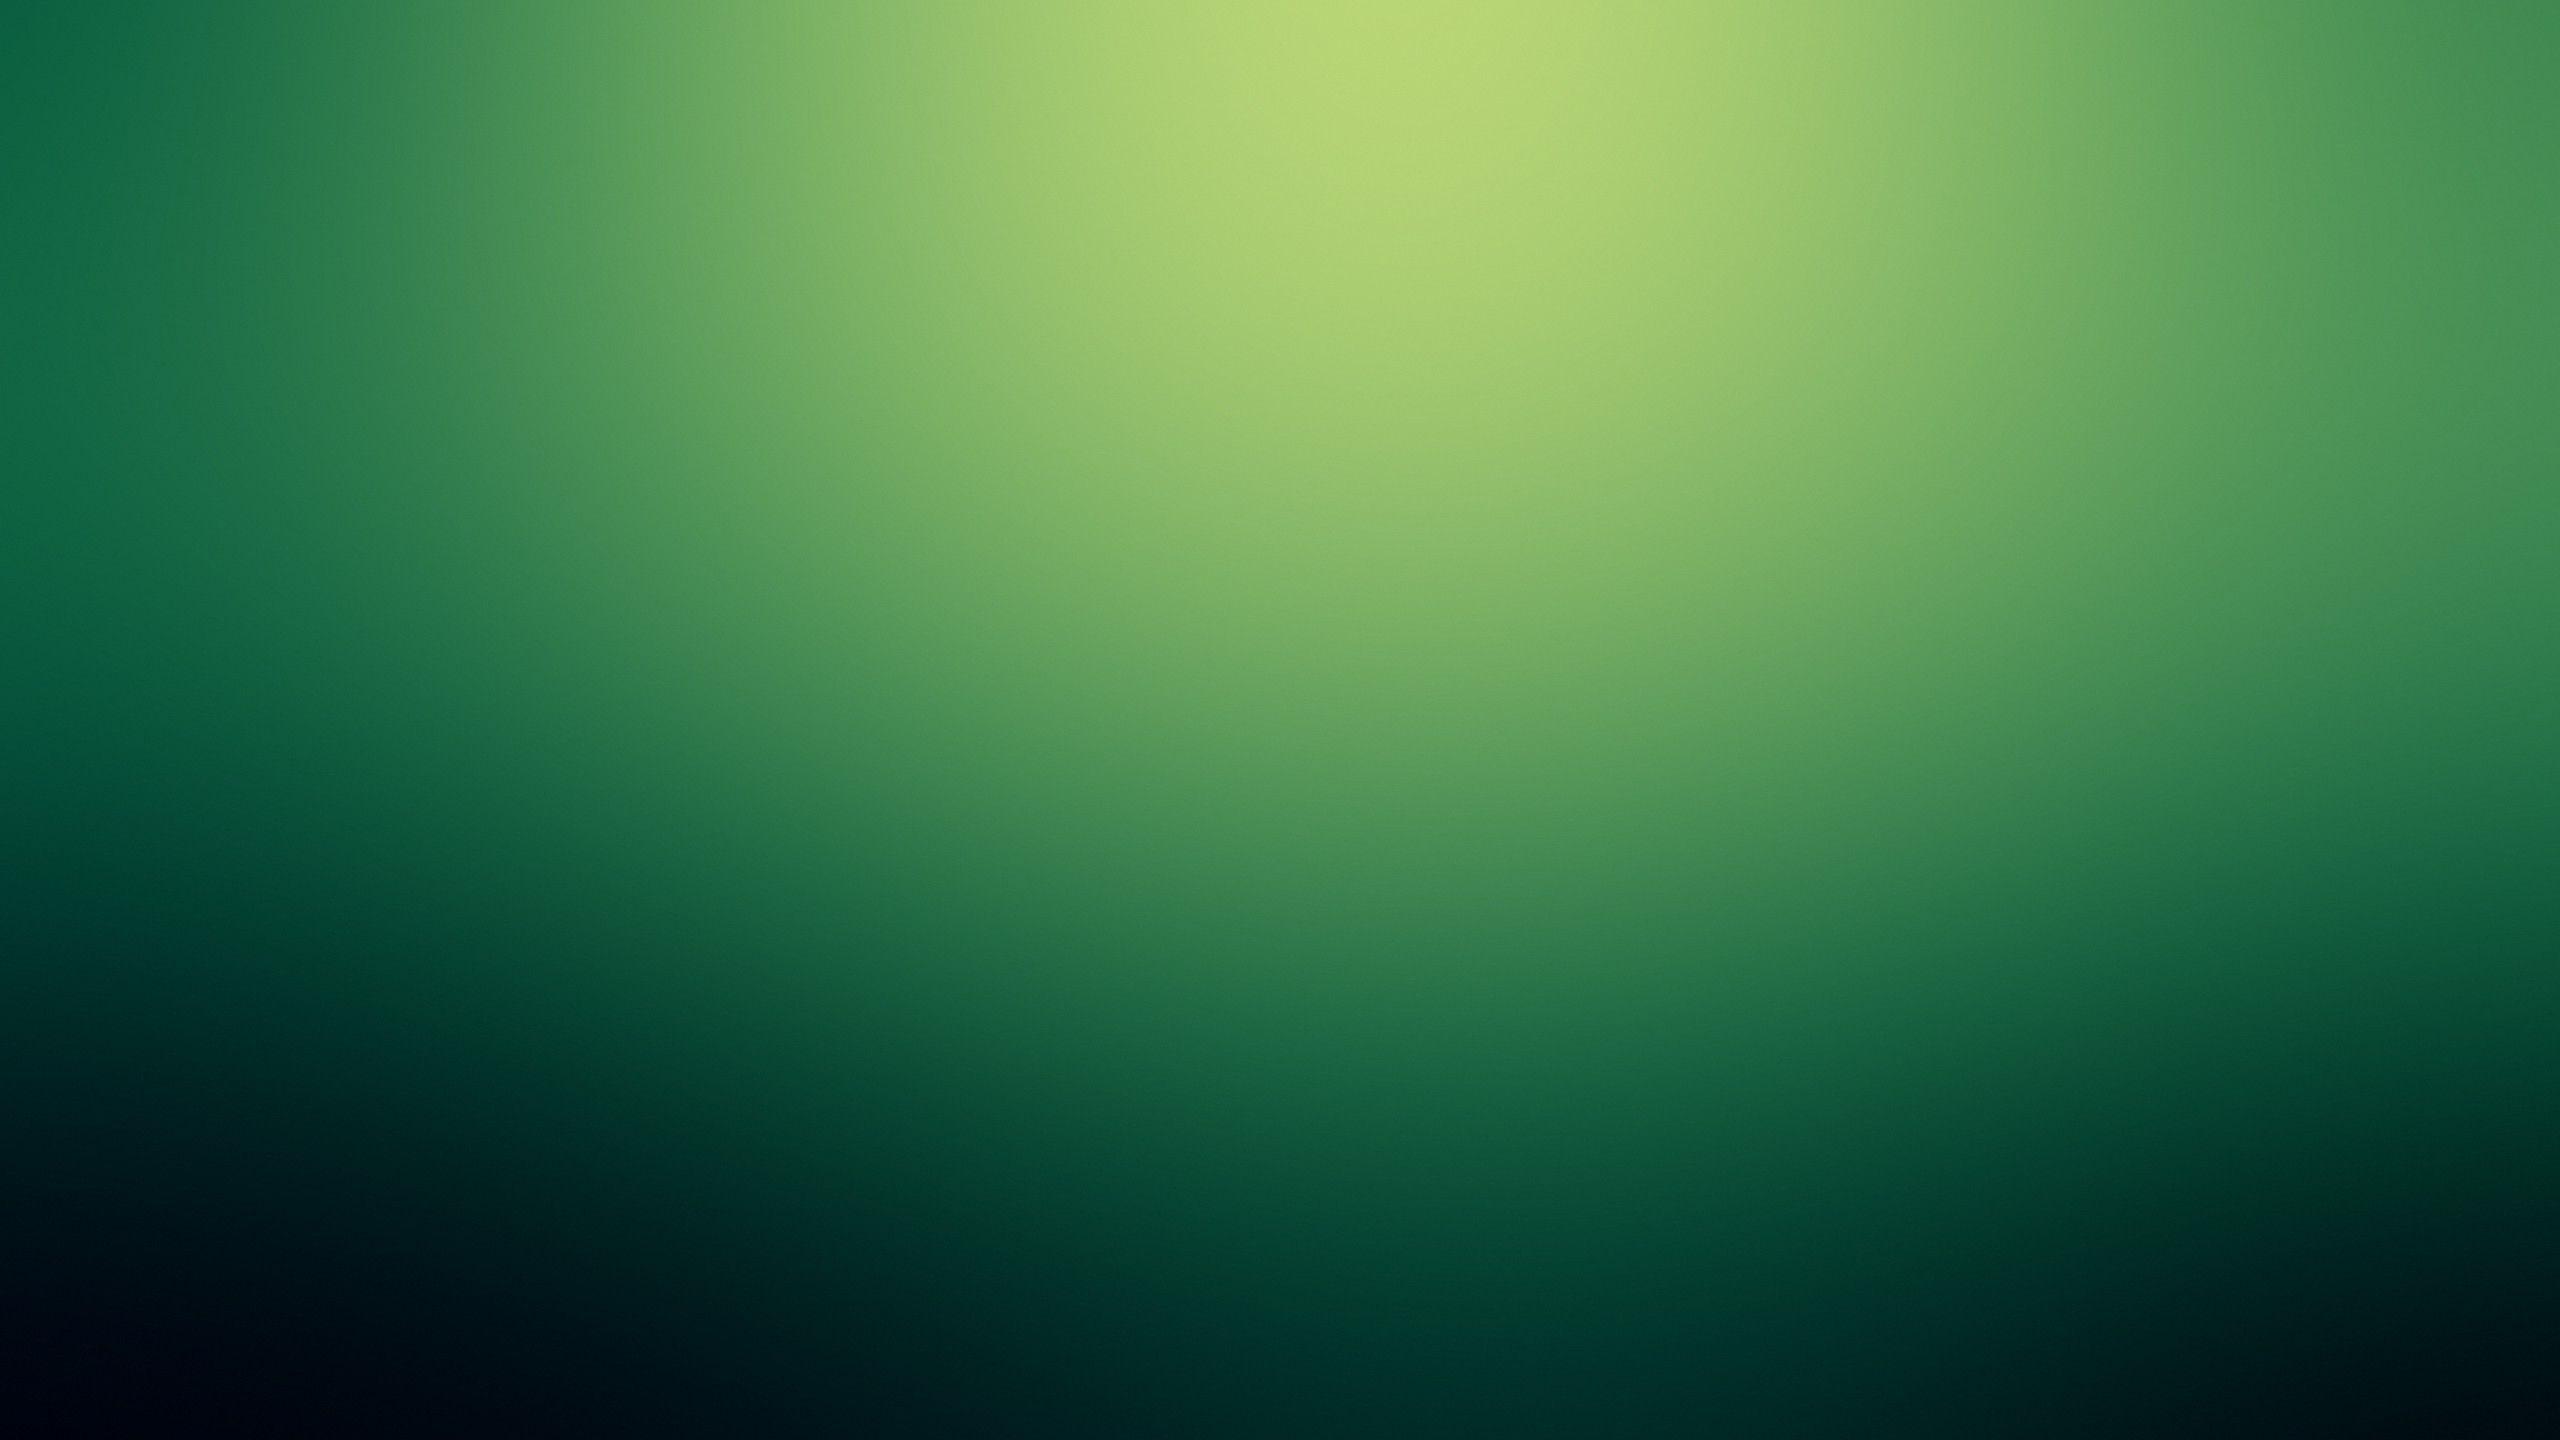 Green Gradient Wallpapers - Top Những Hình Ảnh Đẹp